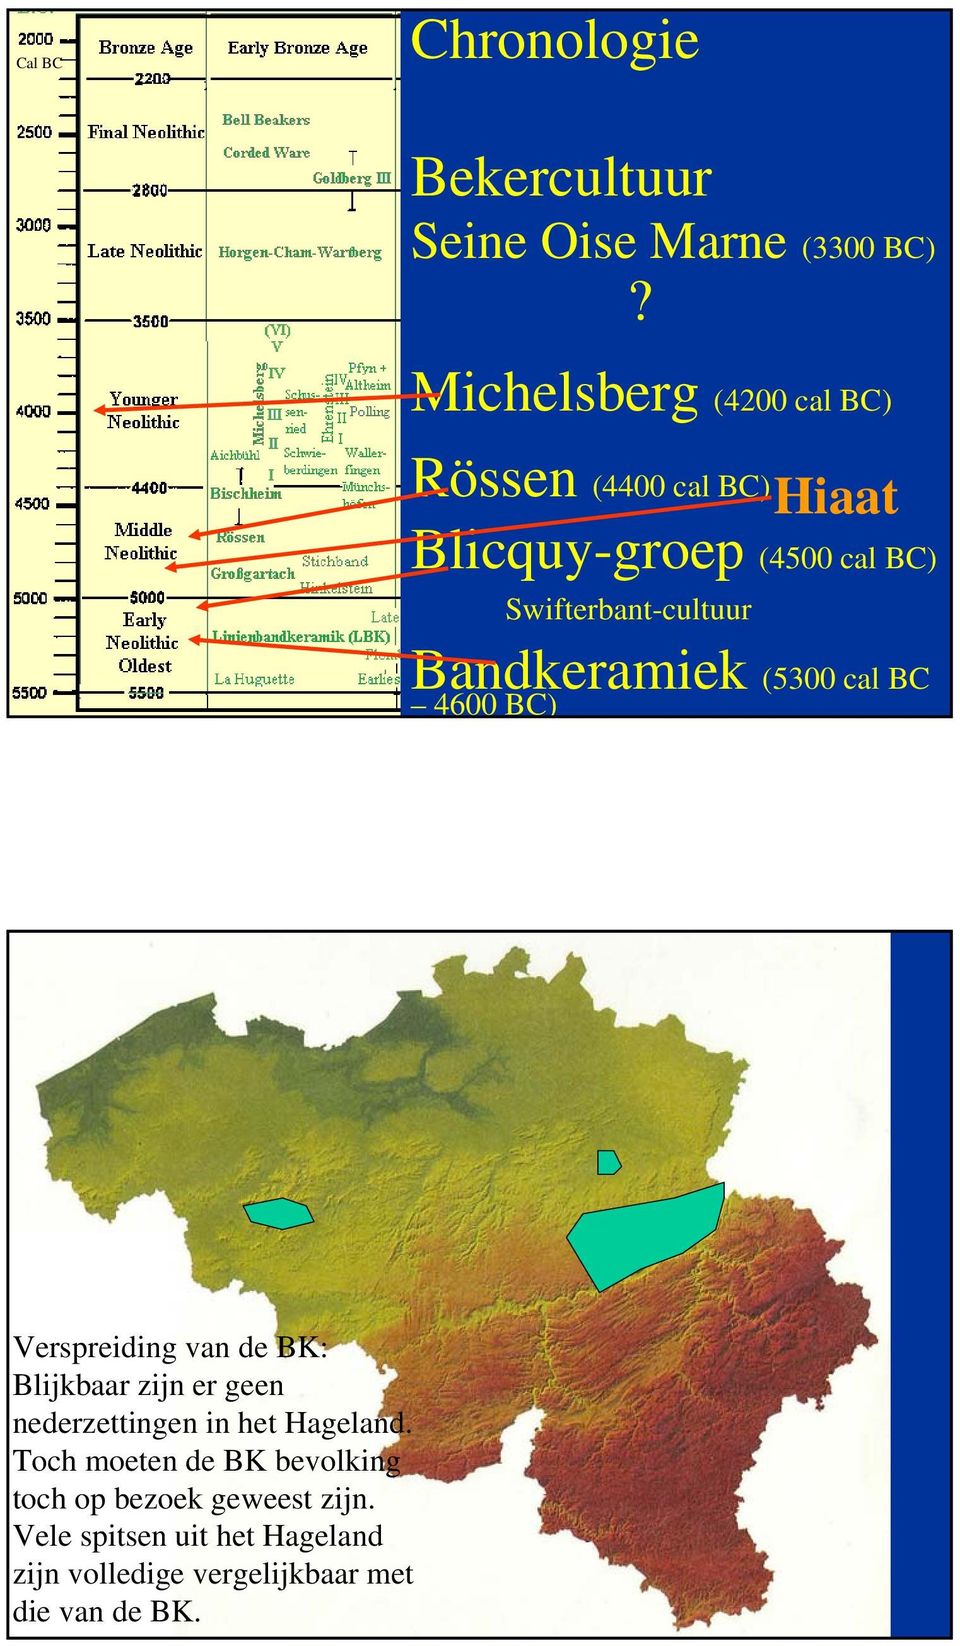 Bandkeramiek (5300 cal BC 4600 BC) Verspreiding van de BK: Blijkbaar zijn er geen nederzettingen in